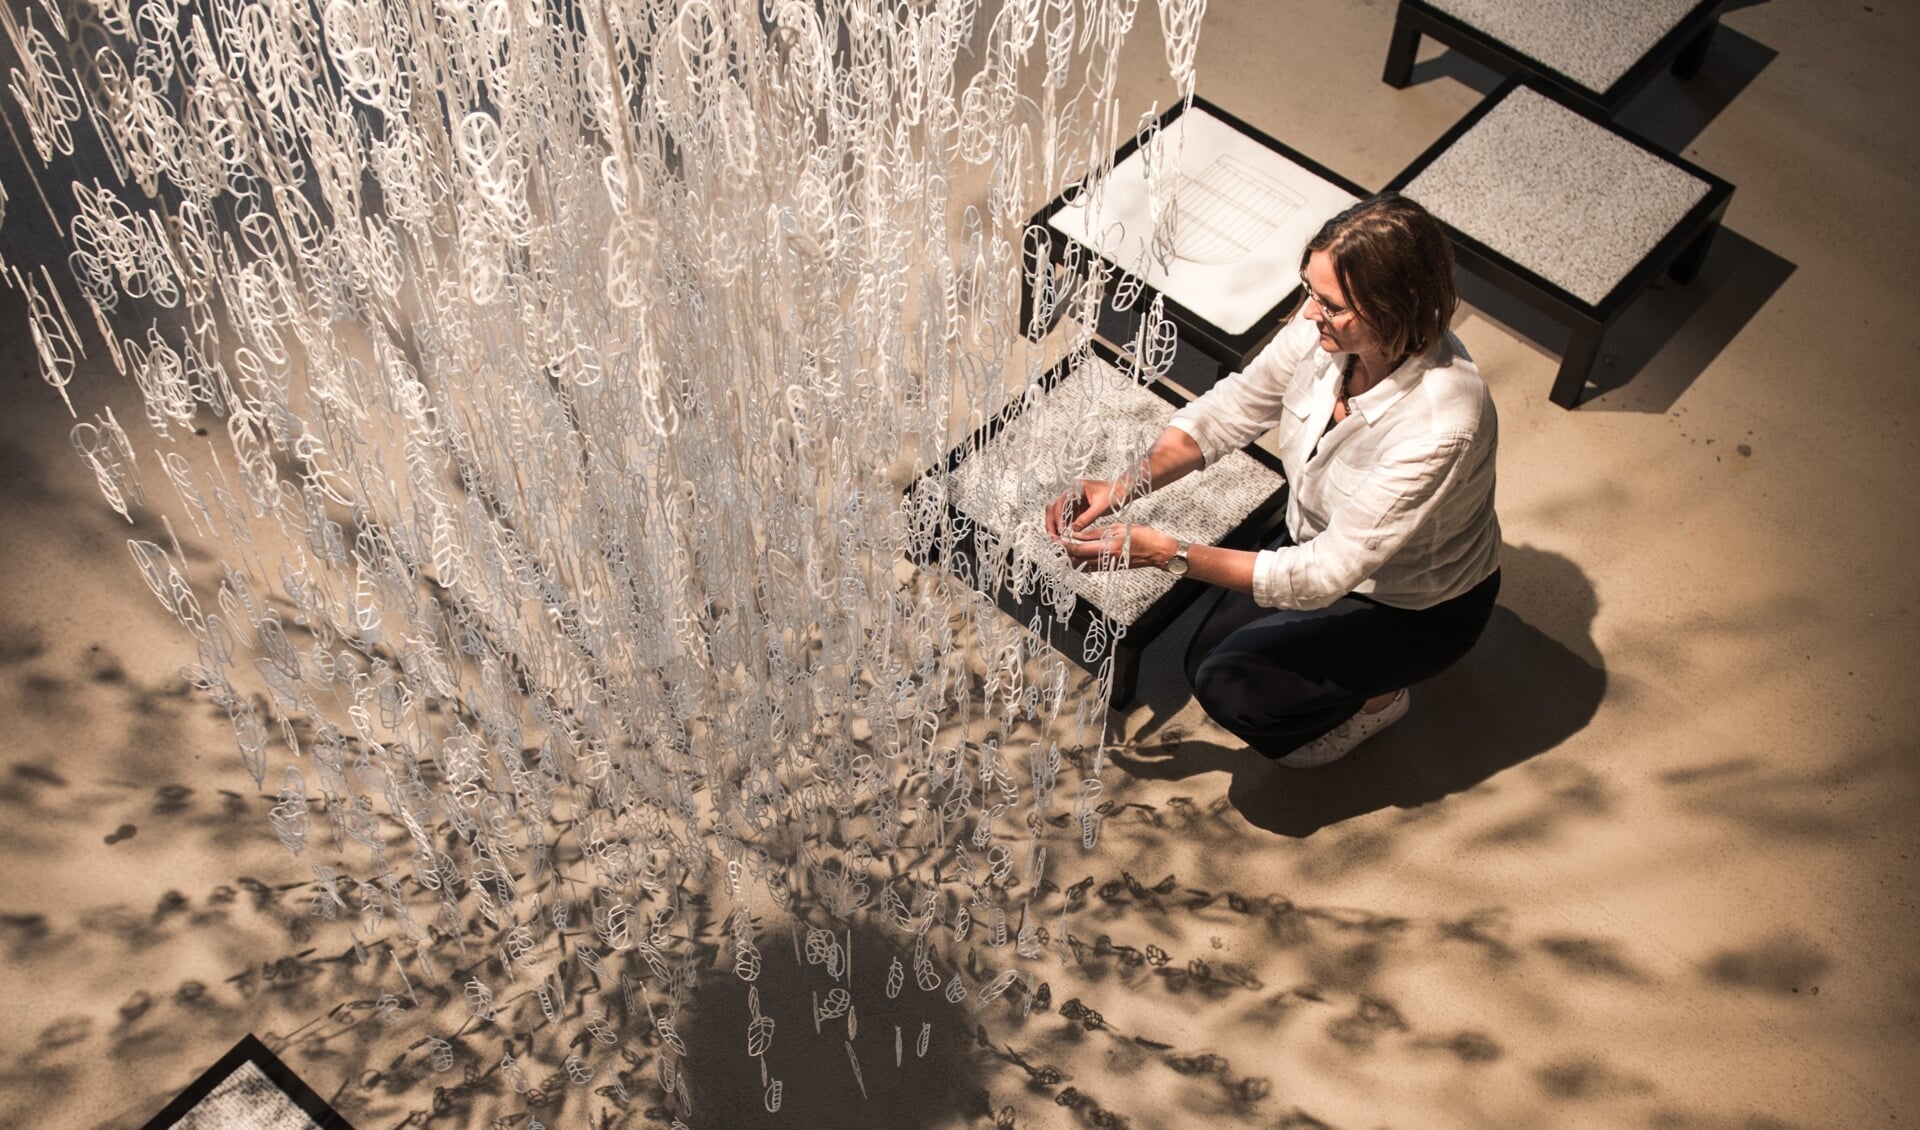 Marjan bouwde 'Installatie Veerkracht' met maar liefst 3.000 glazen veertjes. 